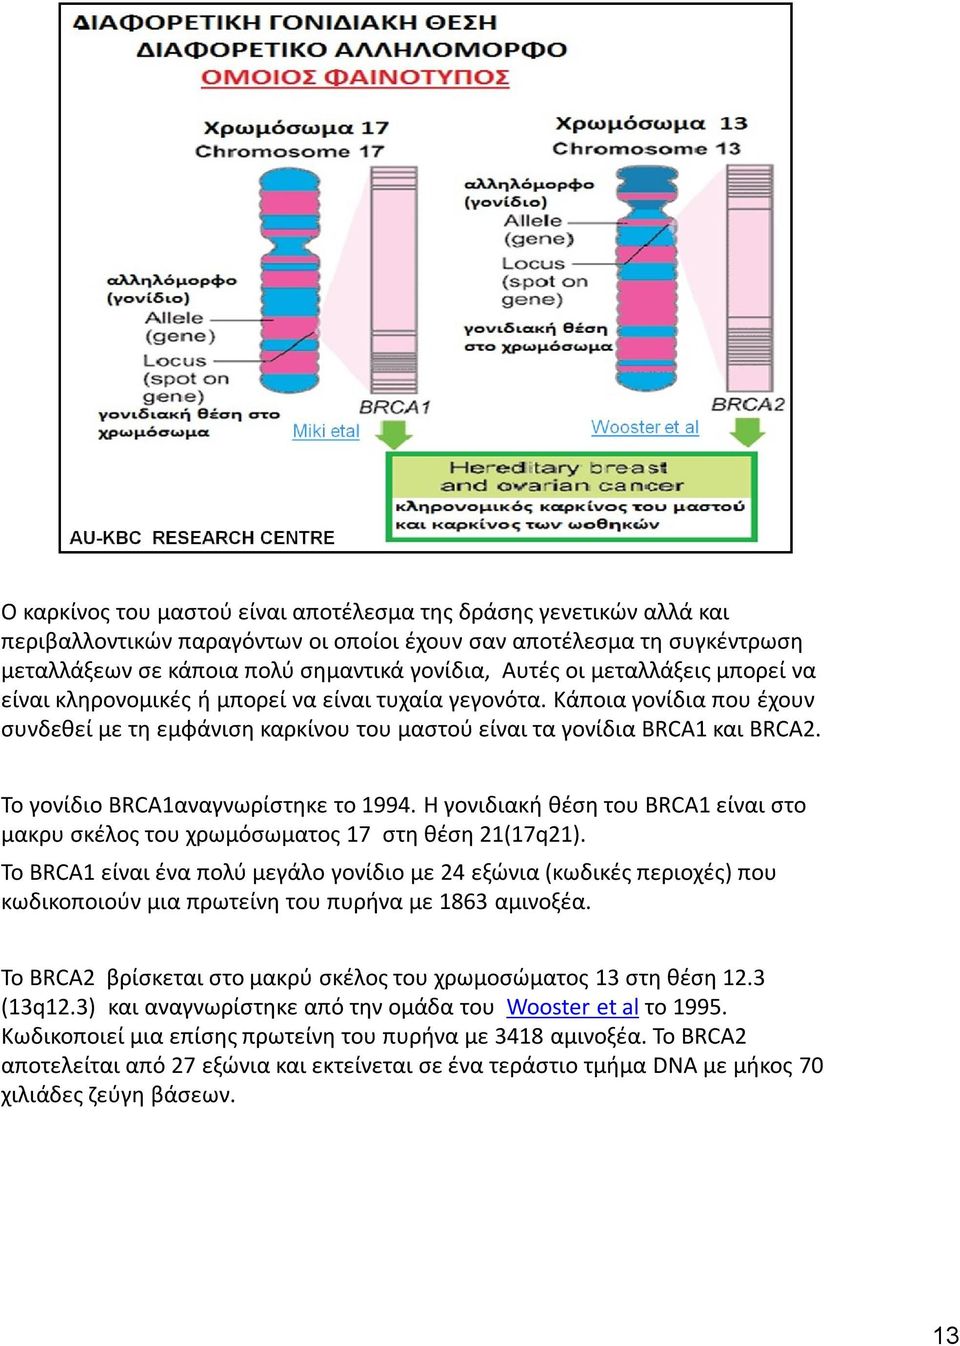 Το γονίδιο BRCA1αναγνωρίστηκε το 1994. Η γονιδιακή θέση του BRCA1 είναι στο μακρυ σκέλος του χρωμόσωματος 17 στη θέση 21(17q21).